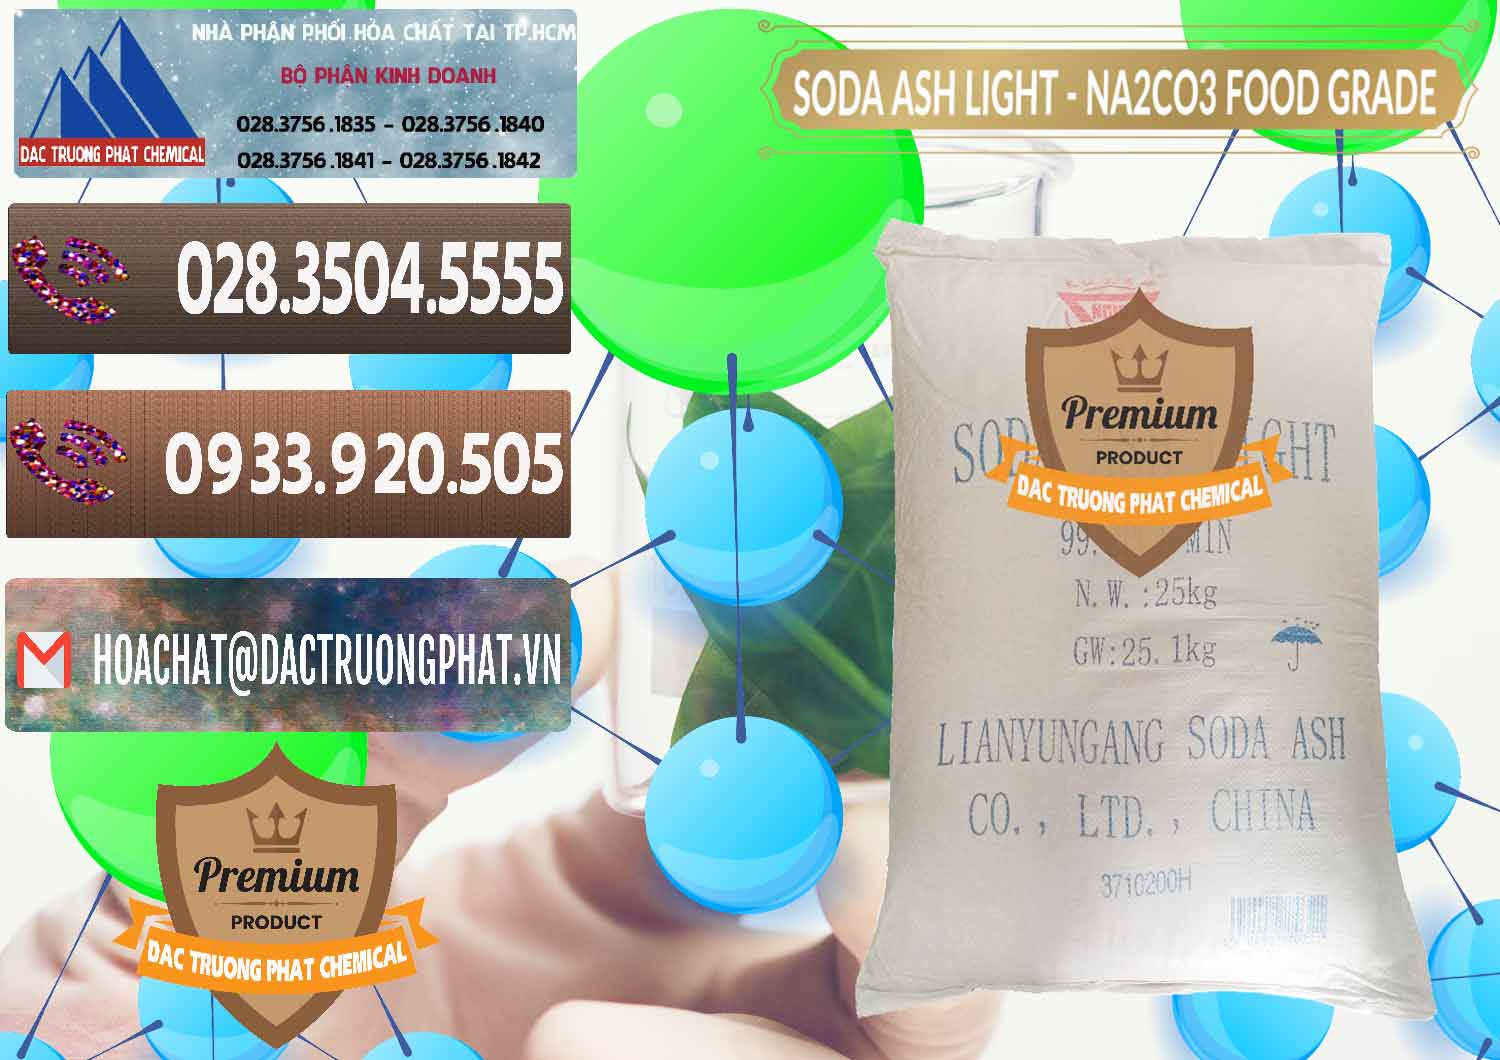 Nơi chuyên bán và phân phối Soda Ash Light – NA2CO3 Food Grade Trung Quốc China - 0127 - Công ty phân phối ( bán ) hóa chất tại TP.HCM - hoachatviet.net